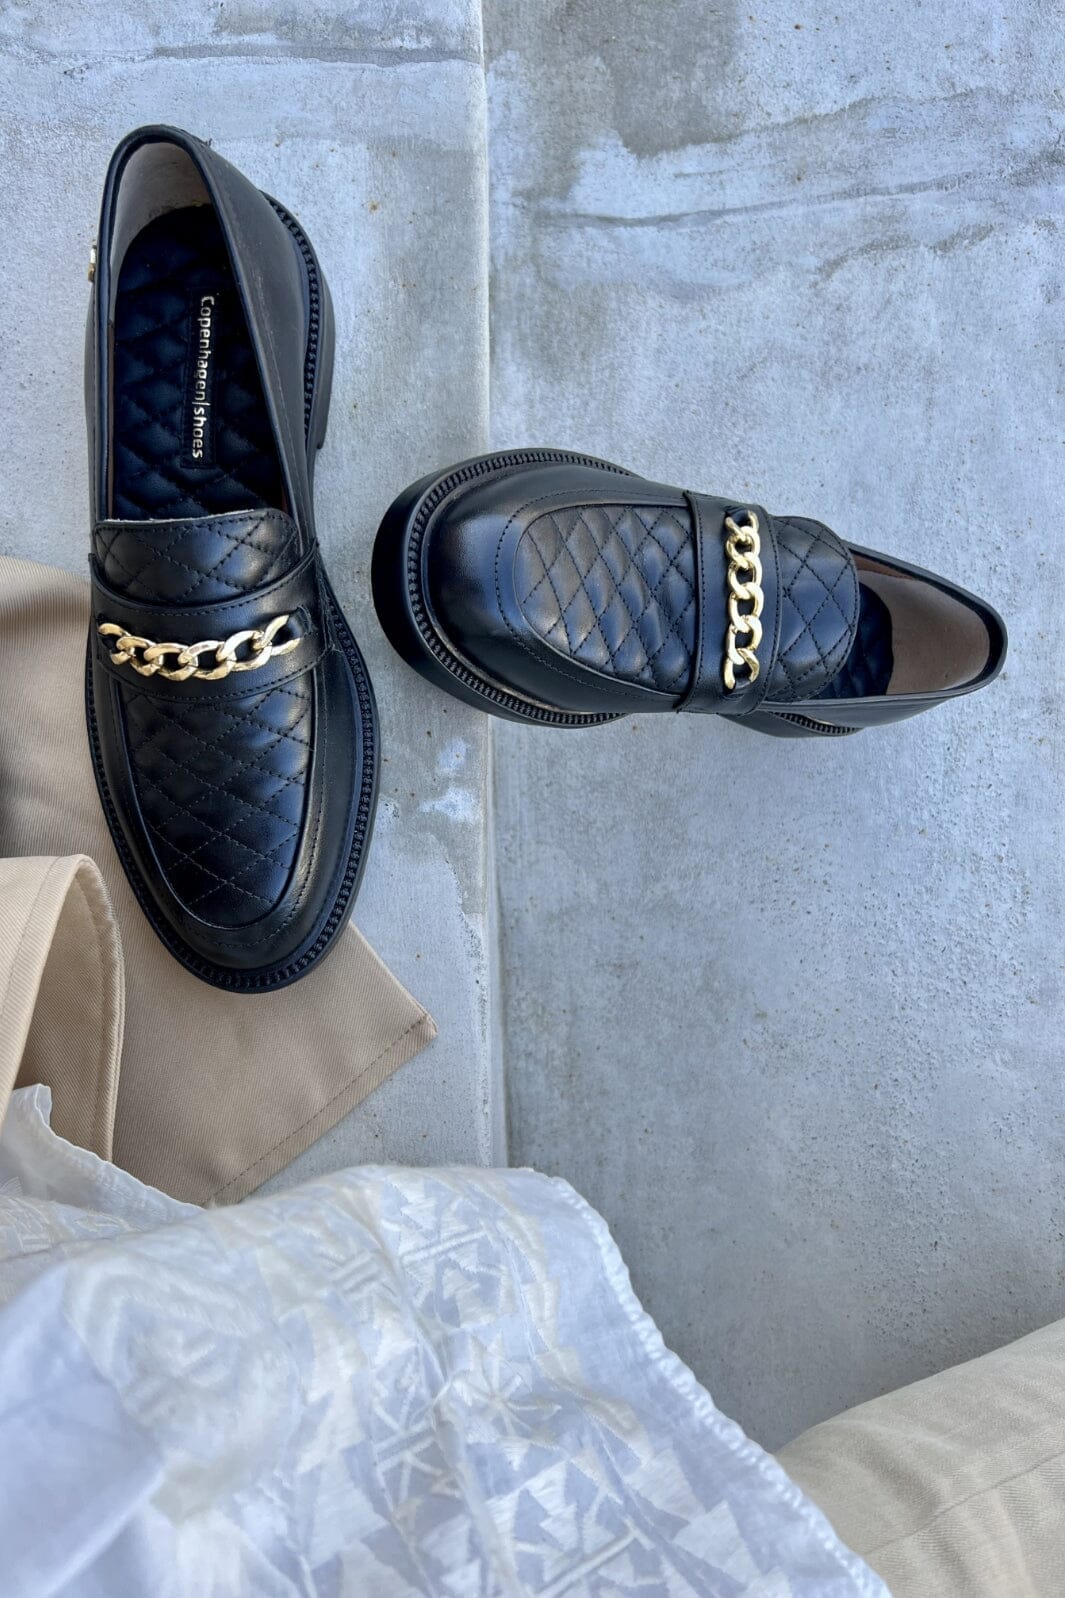 Copenhagen Shoes - Kayliee Loafer - 0001 Black Loafers 